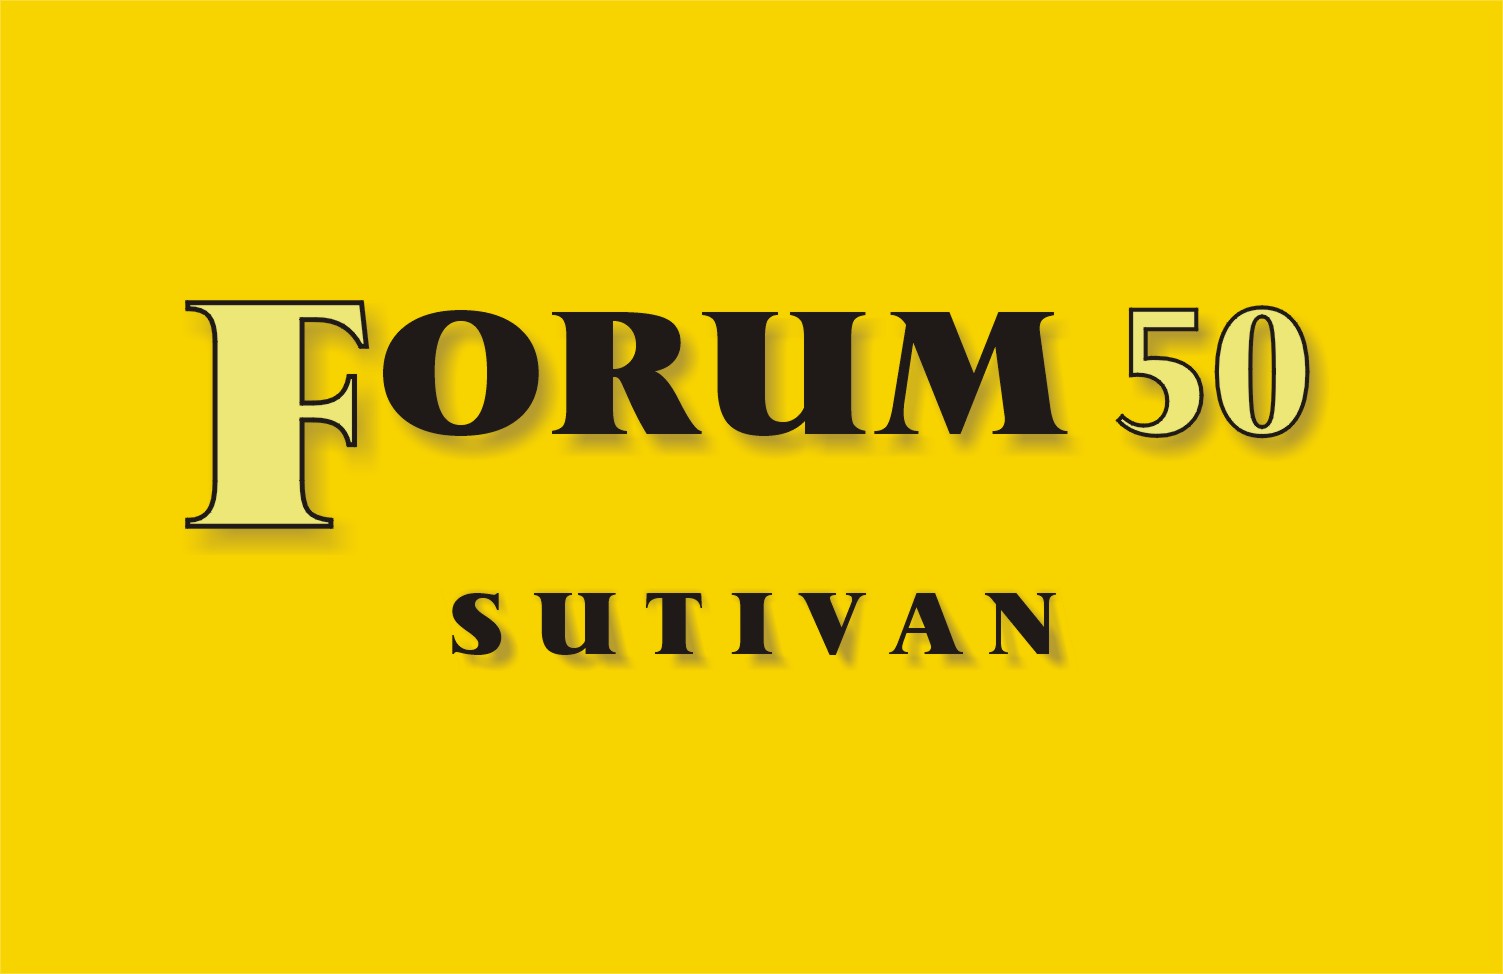 Forum 50